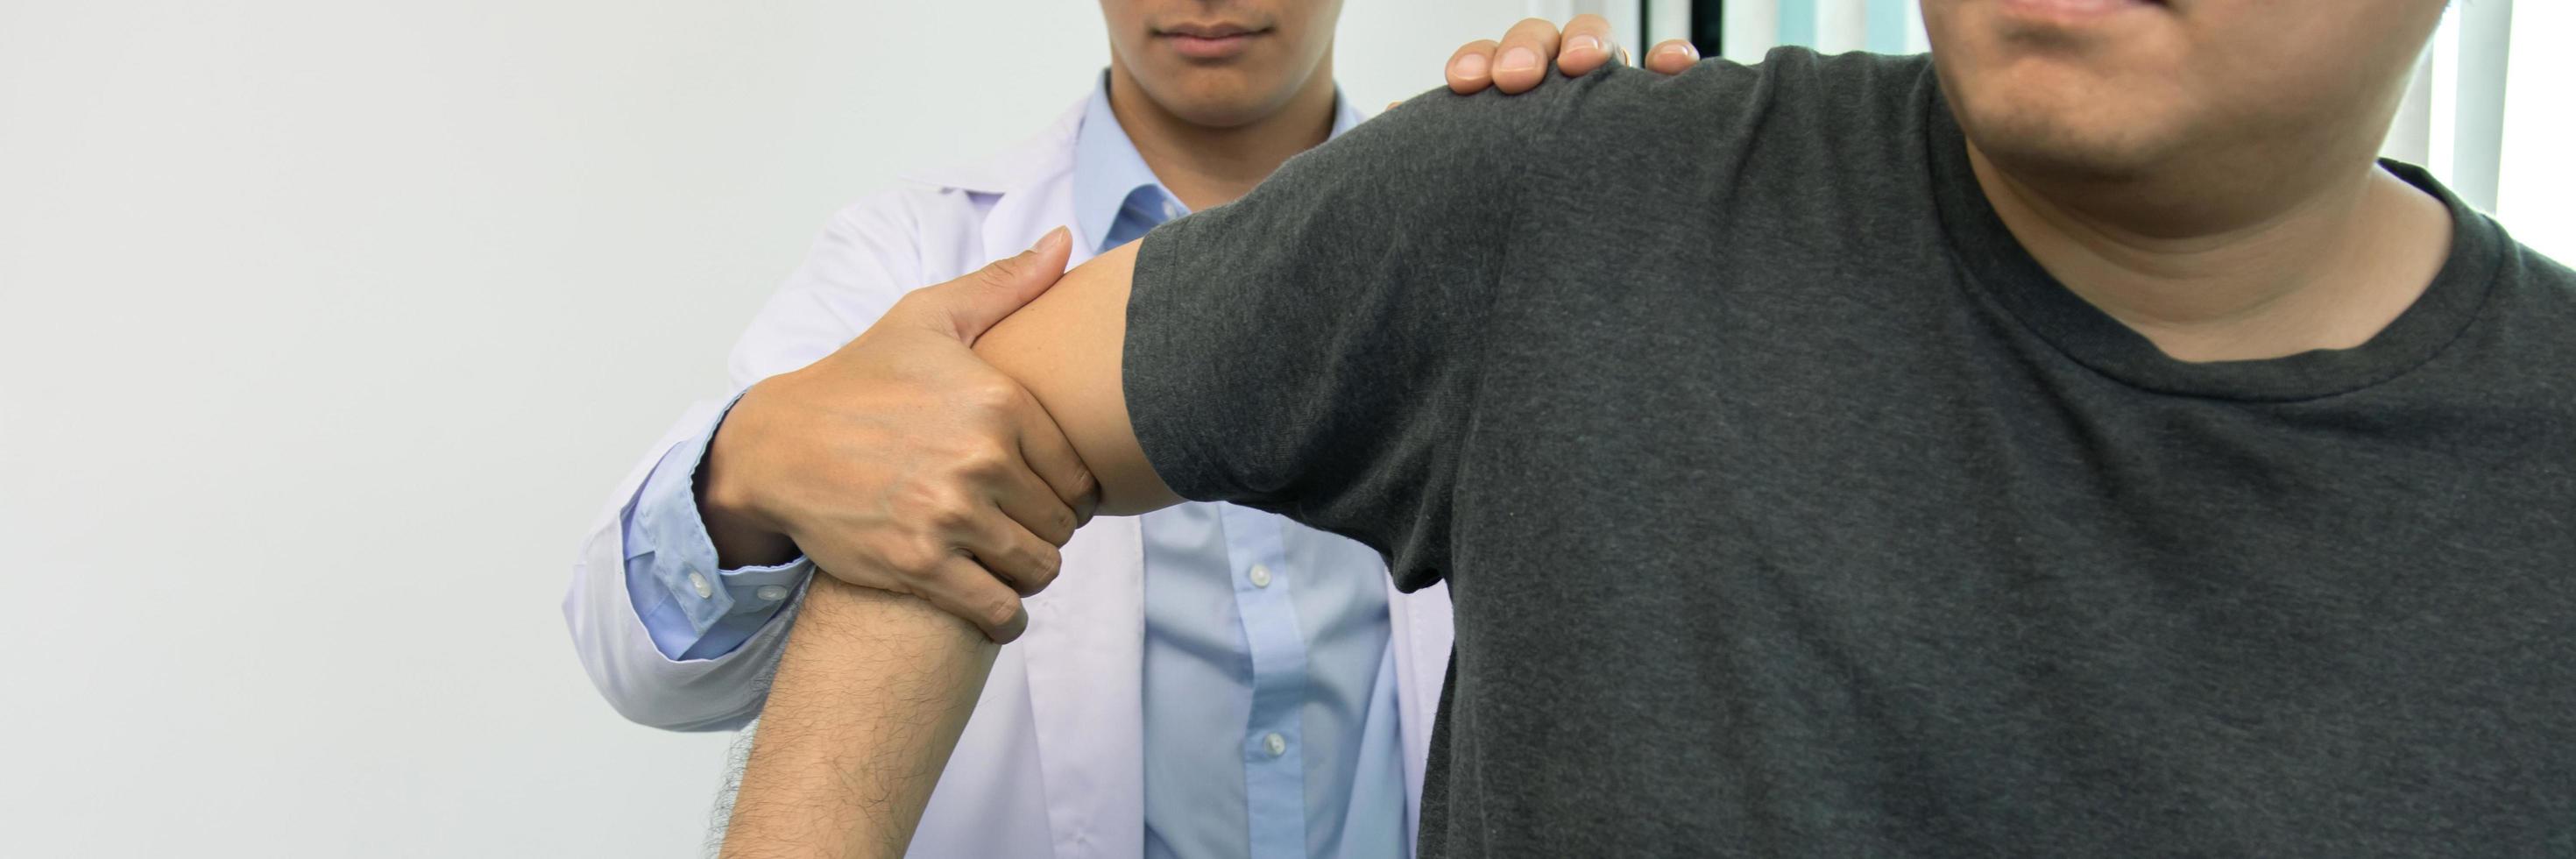 les physiothérapeutes appuient sur l'épaule du patient pour vérifier la douleur. photo